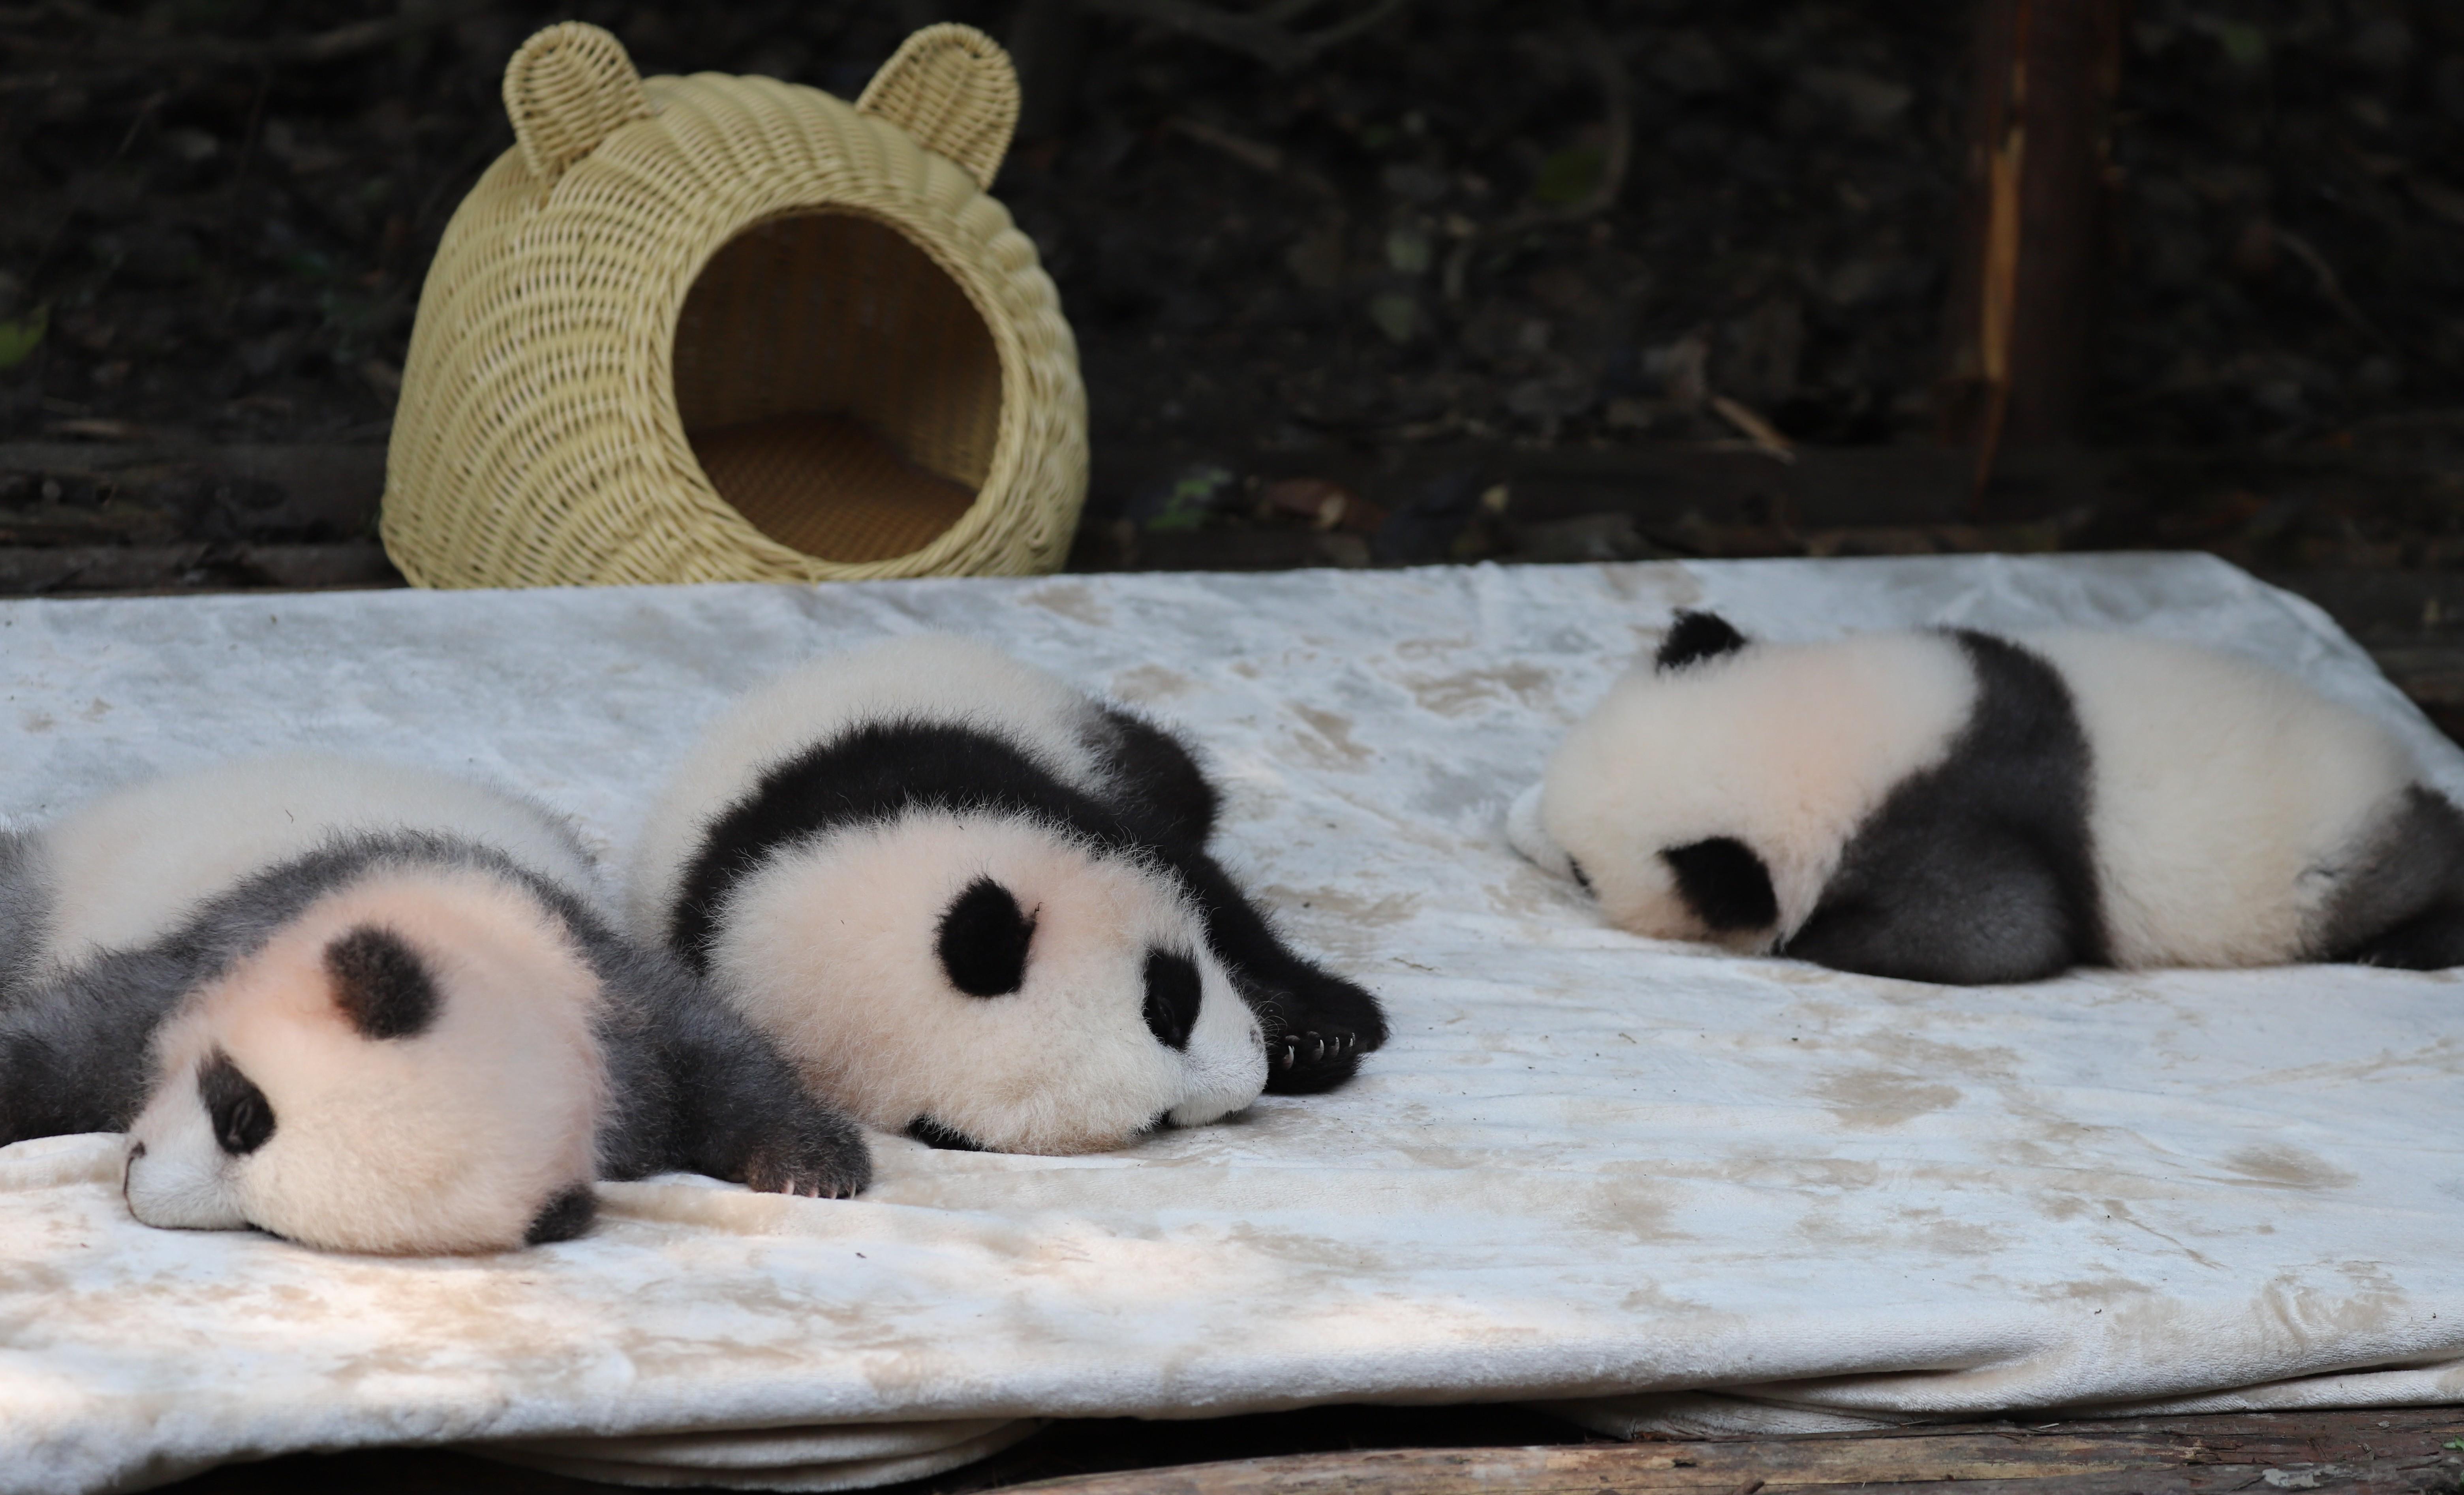 知识贴:全国两大熊猫研究机构,你应该如何选择去哪里看熊猫?